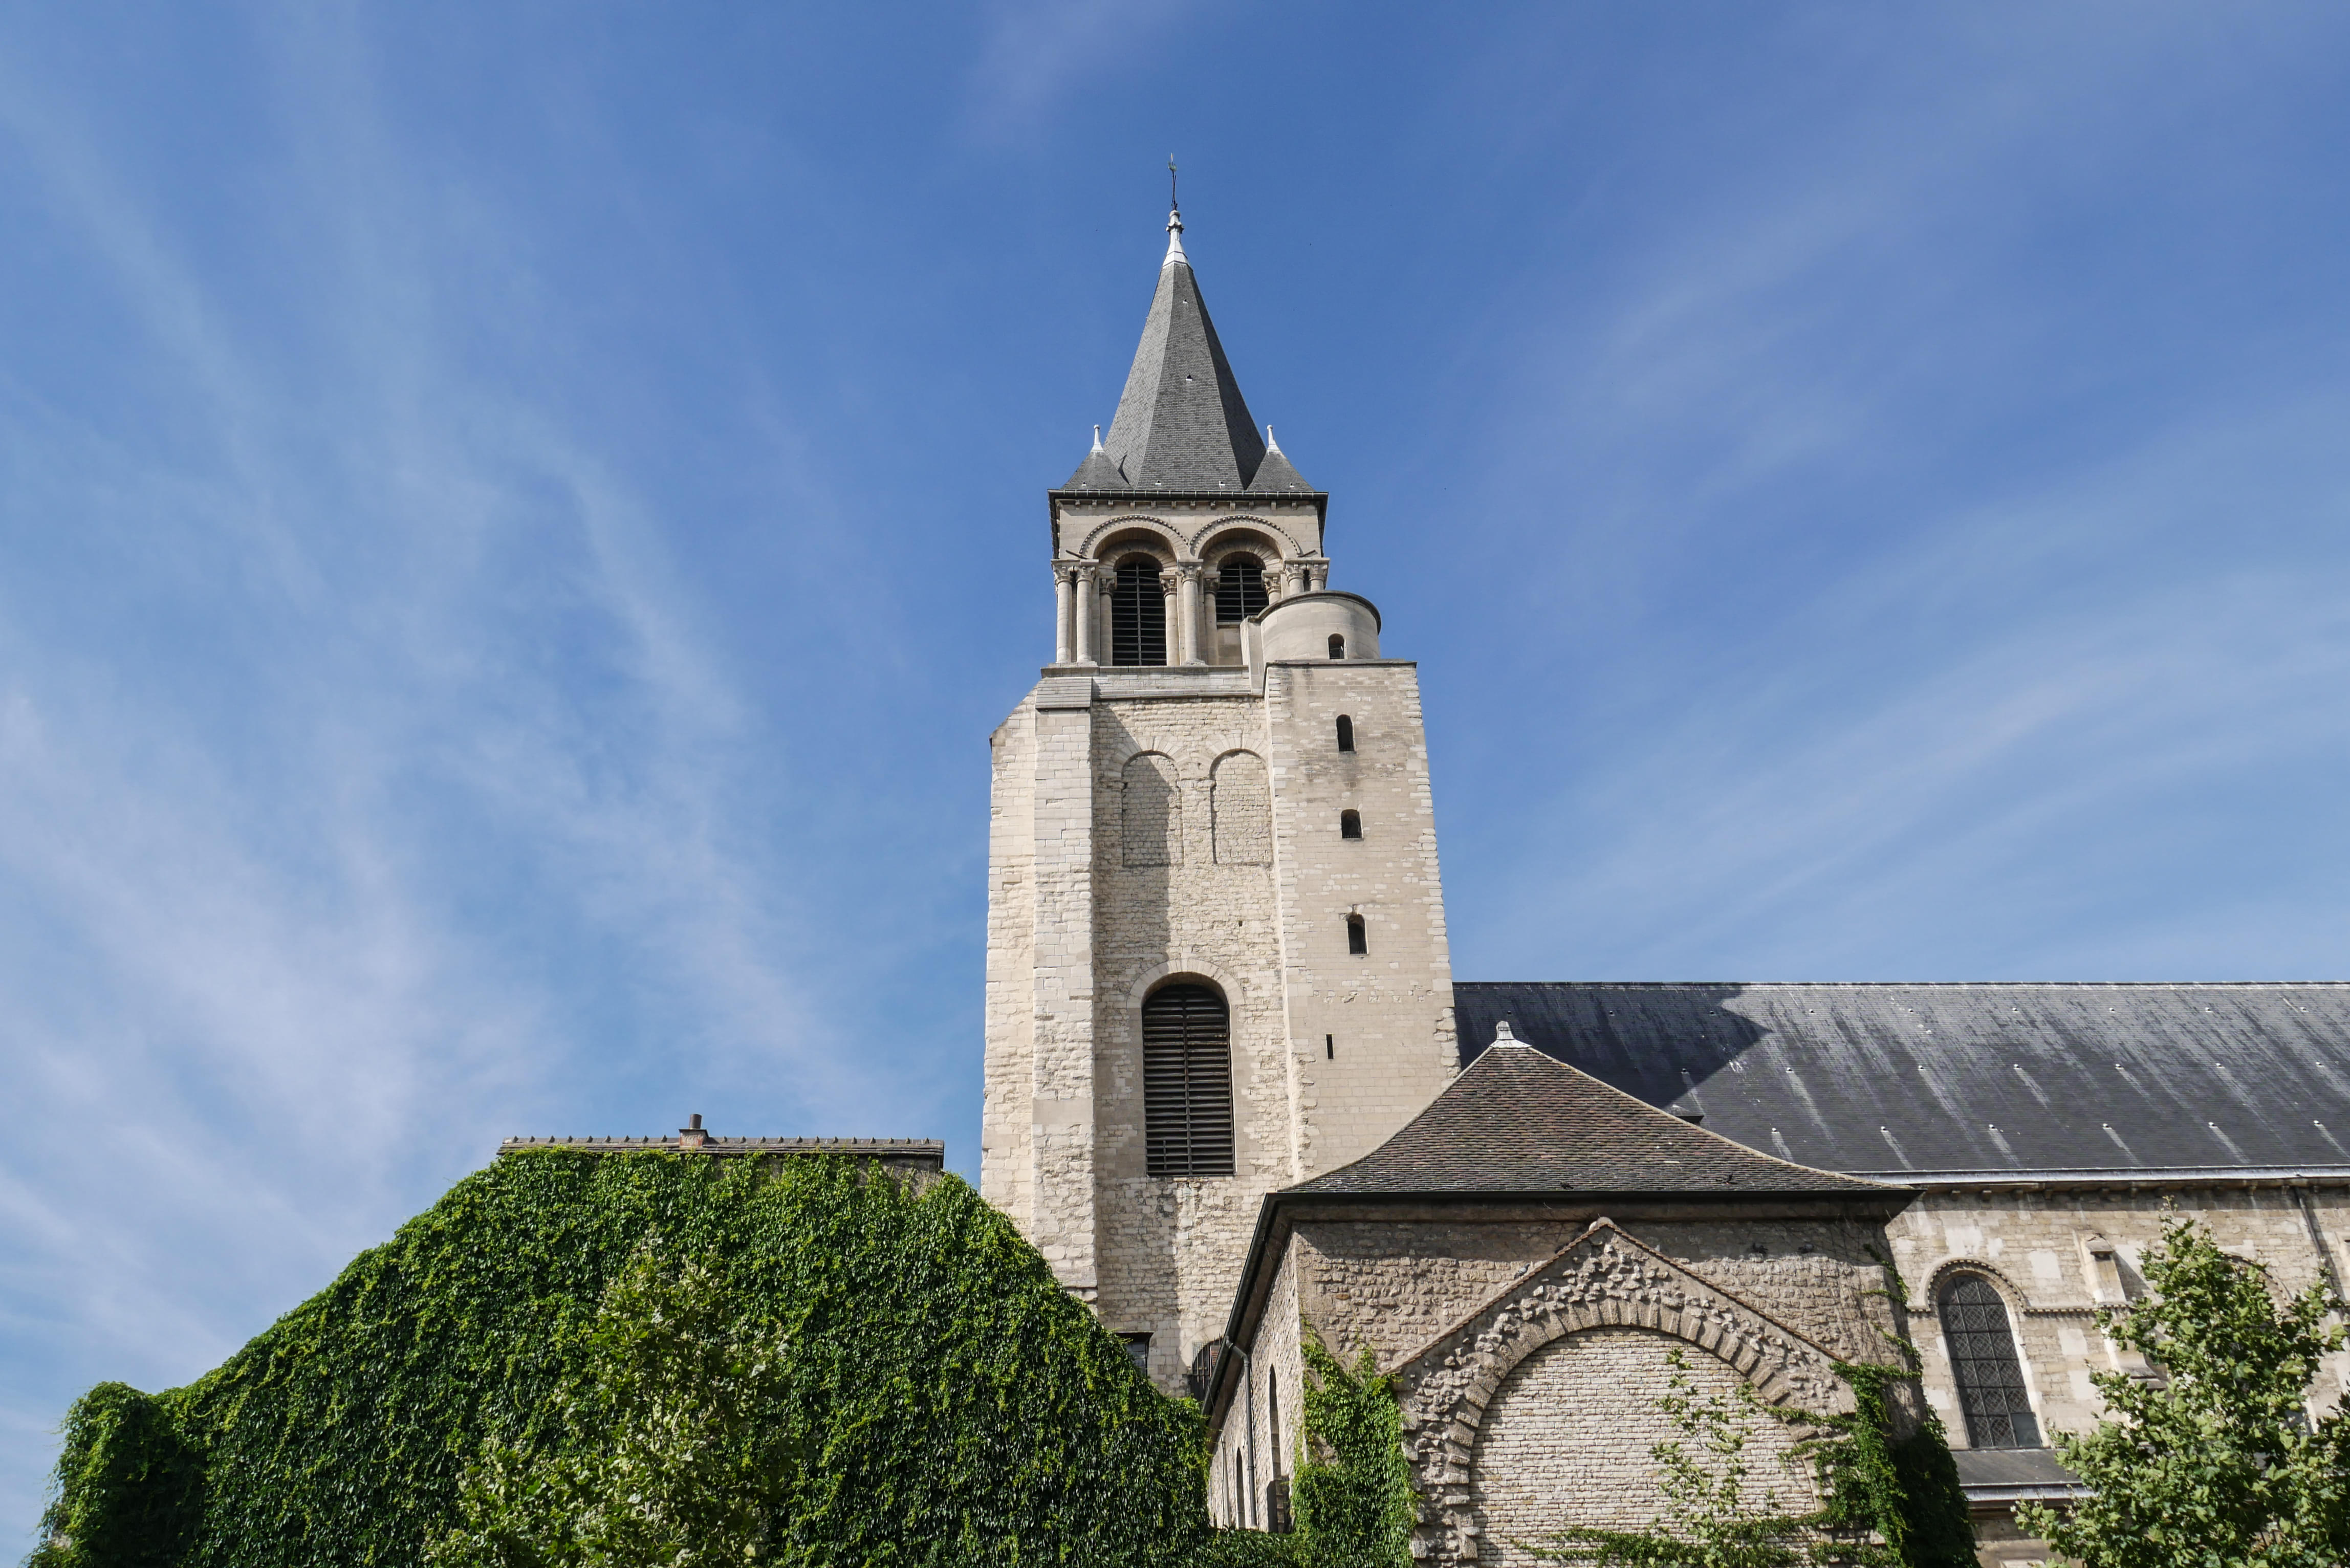 Abbey of Saint Germain des Pres